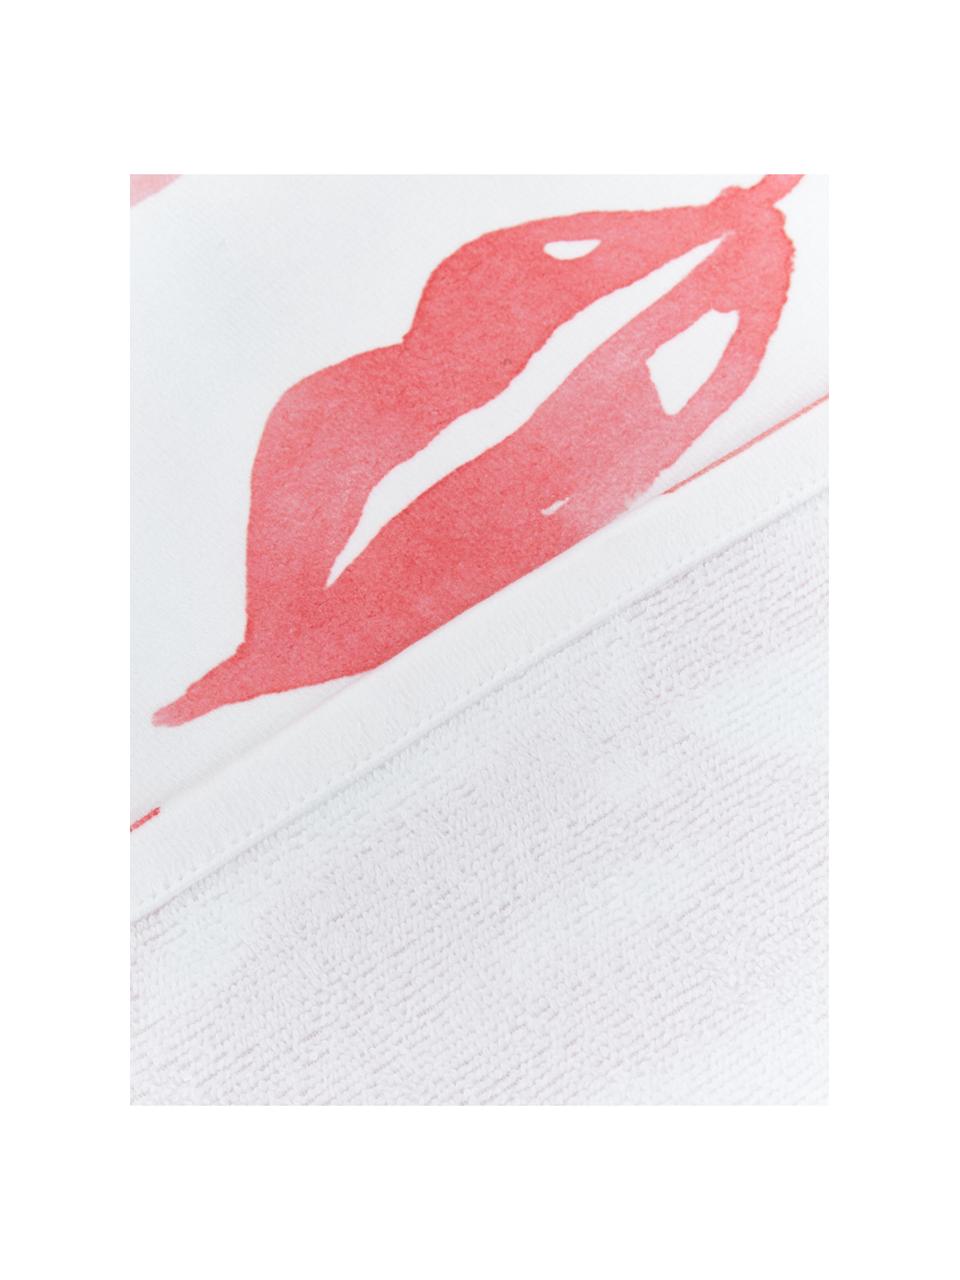 Serviette de plage légère design Pout, Blanc, rouge, rose